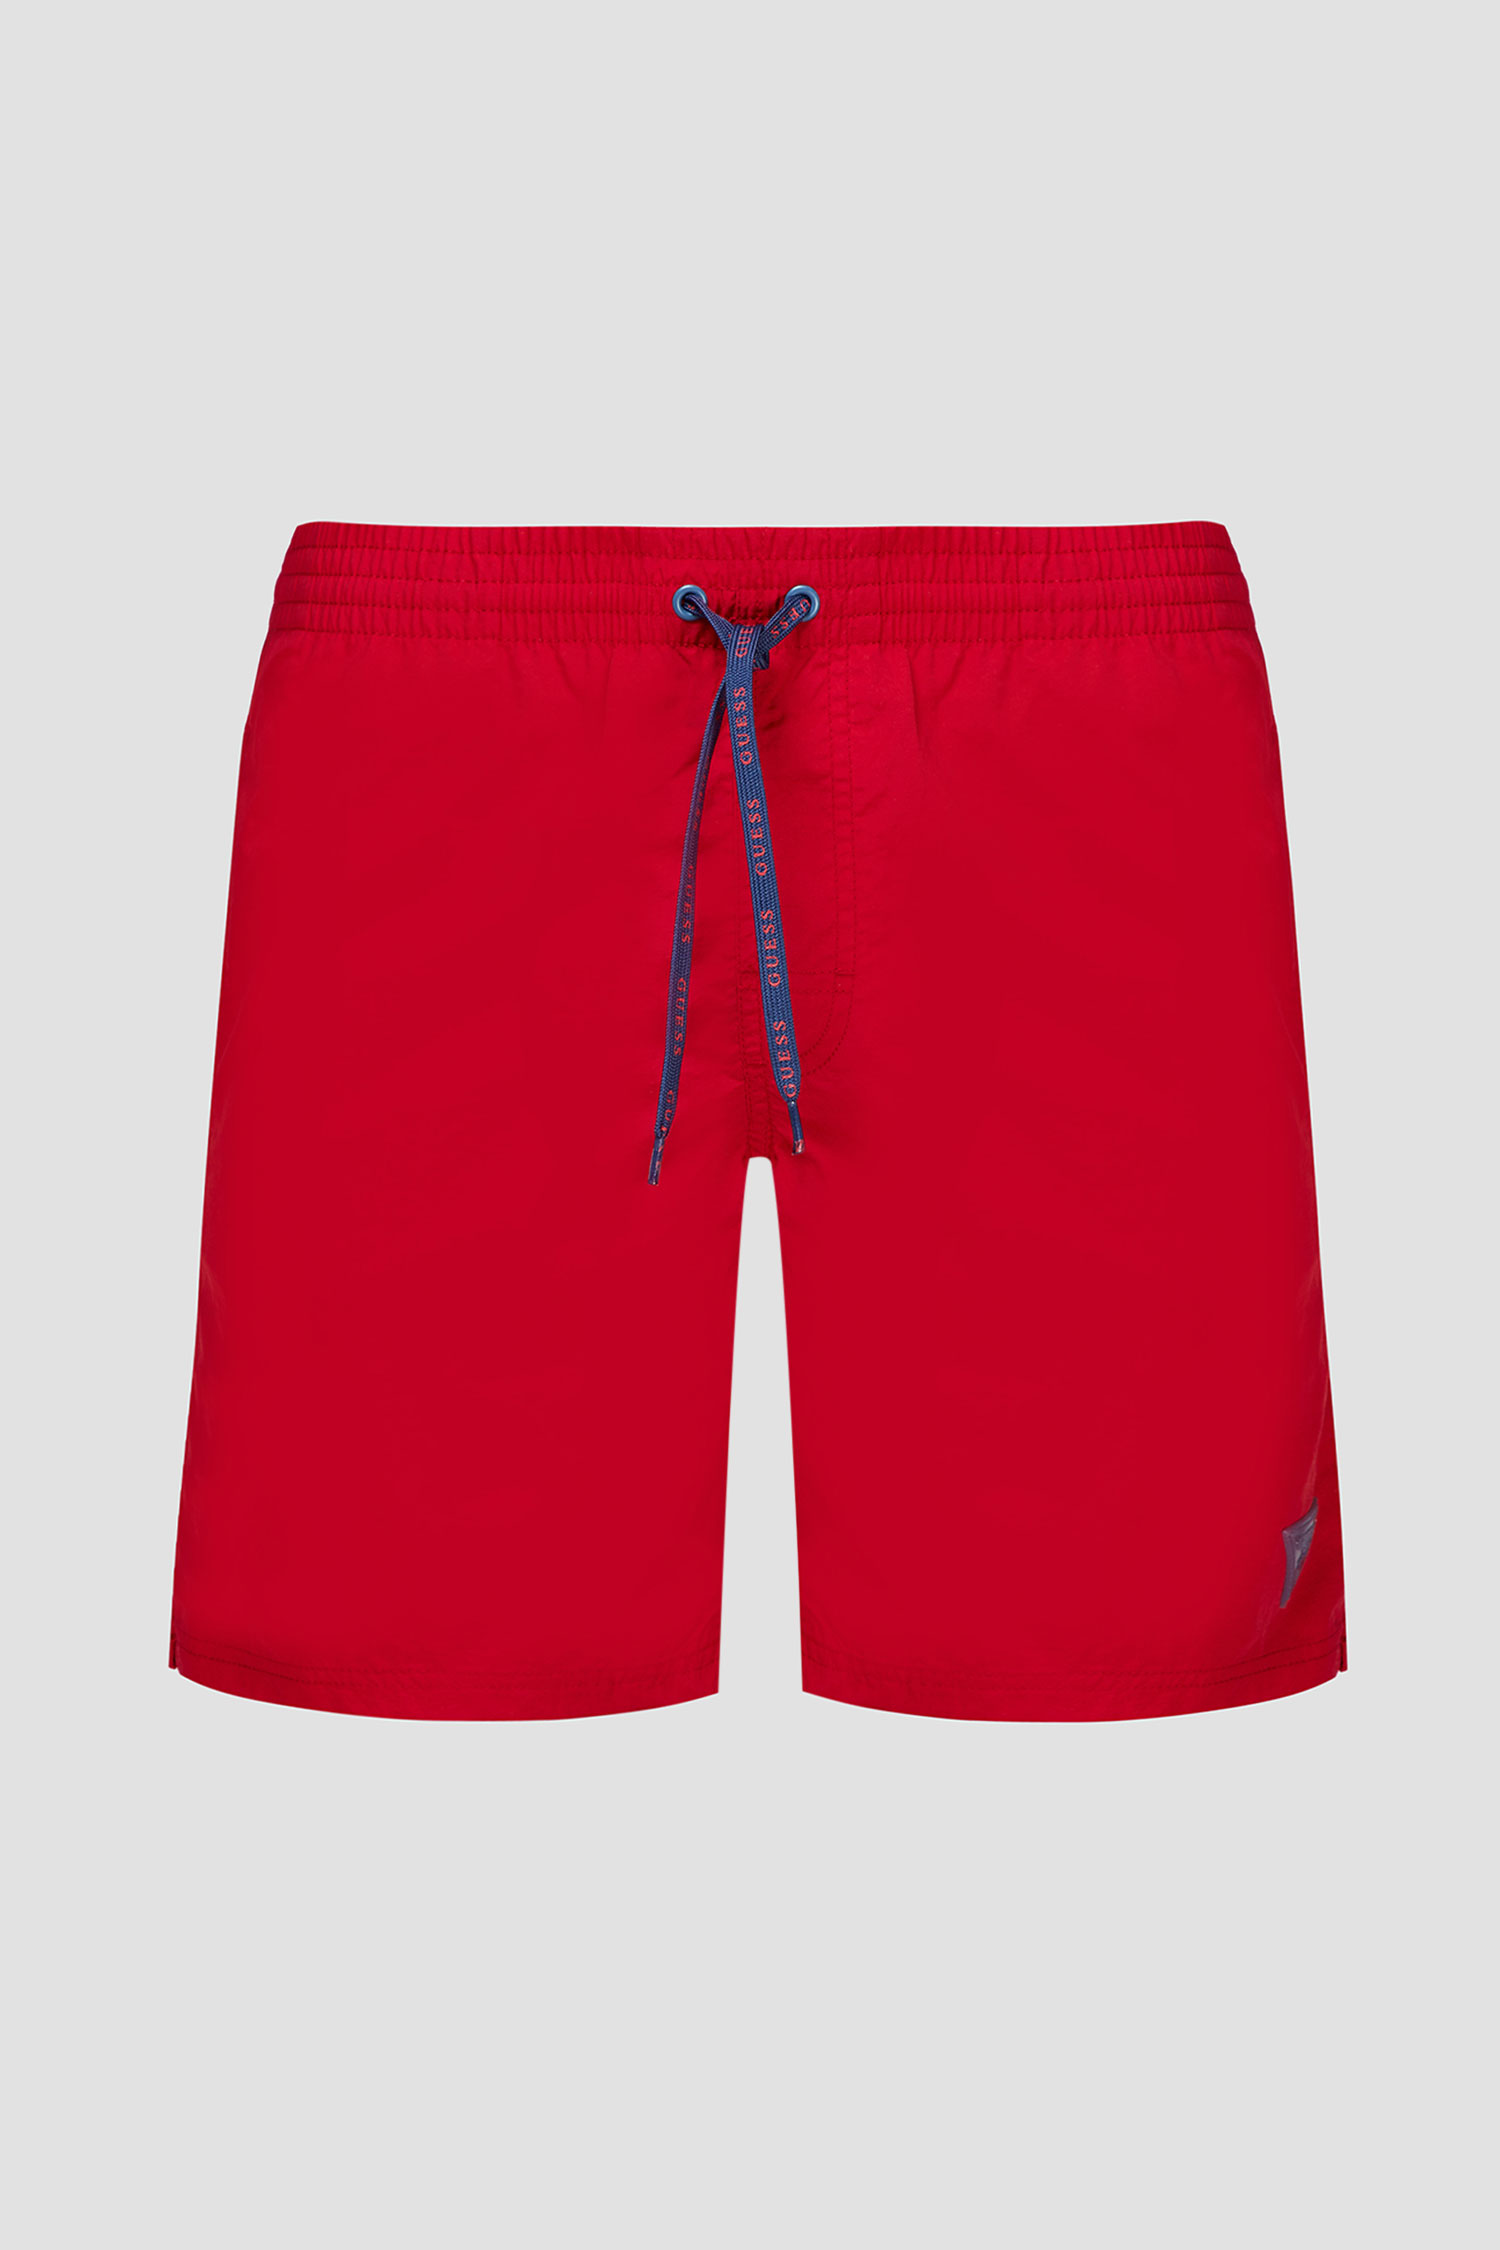 Красные плавательные шорты для парней Guess F02T01.TEL27;TLRD